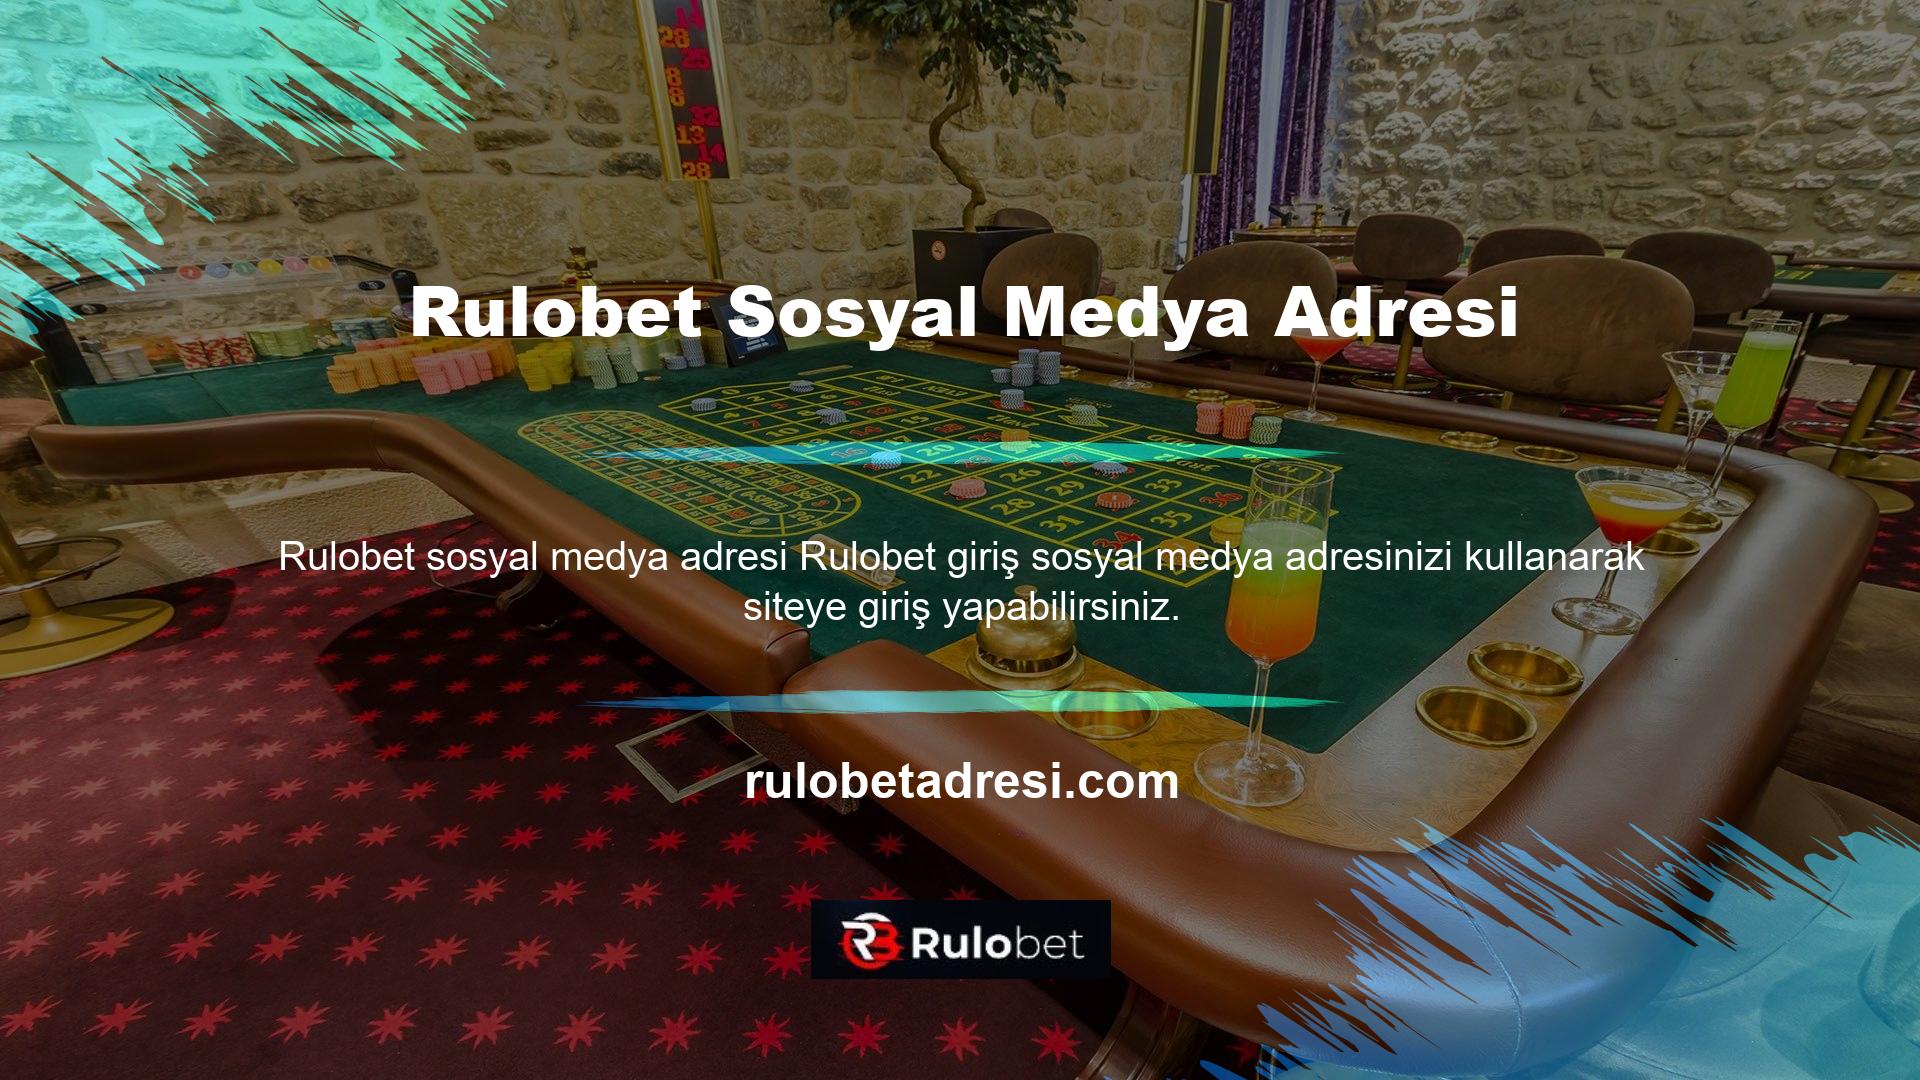 Uluslararası bir bahis sitesi olan Rulobet